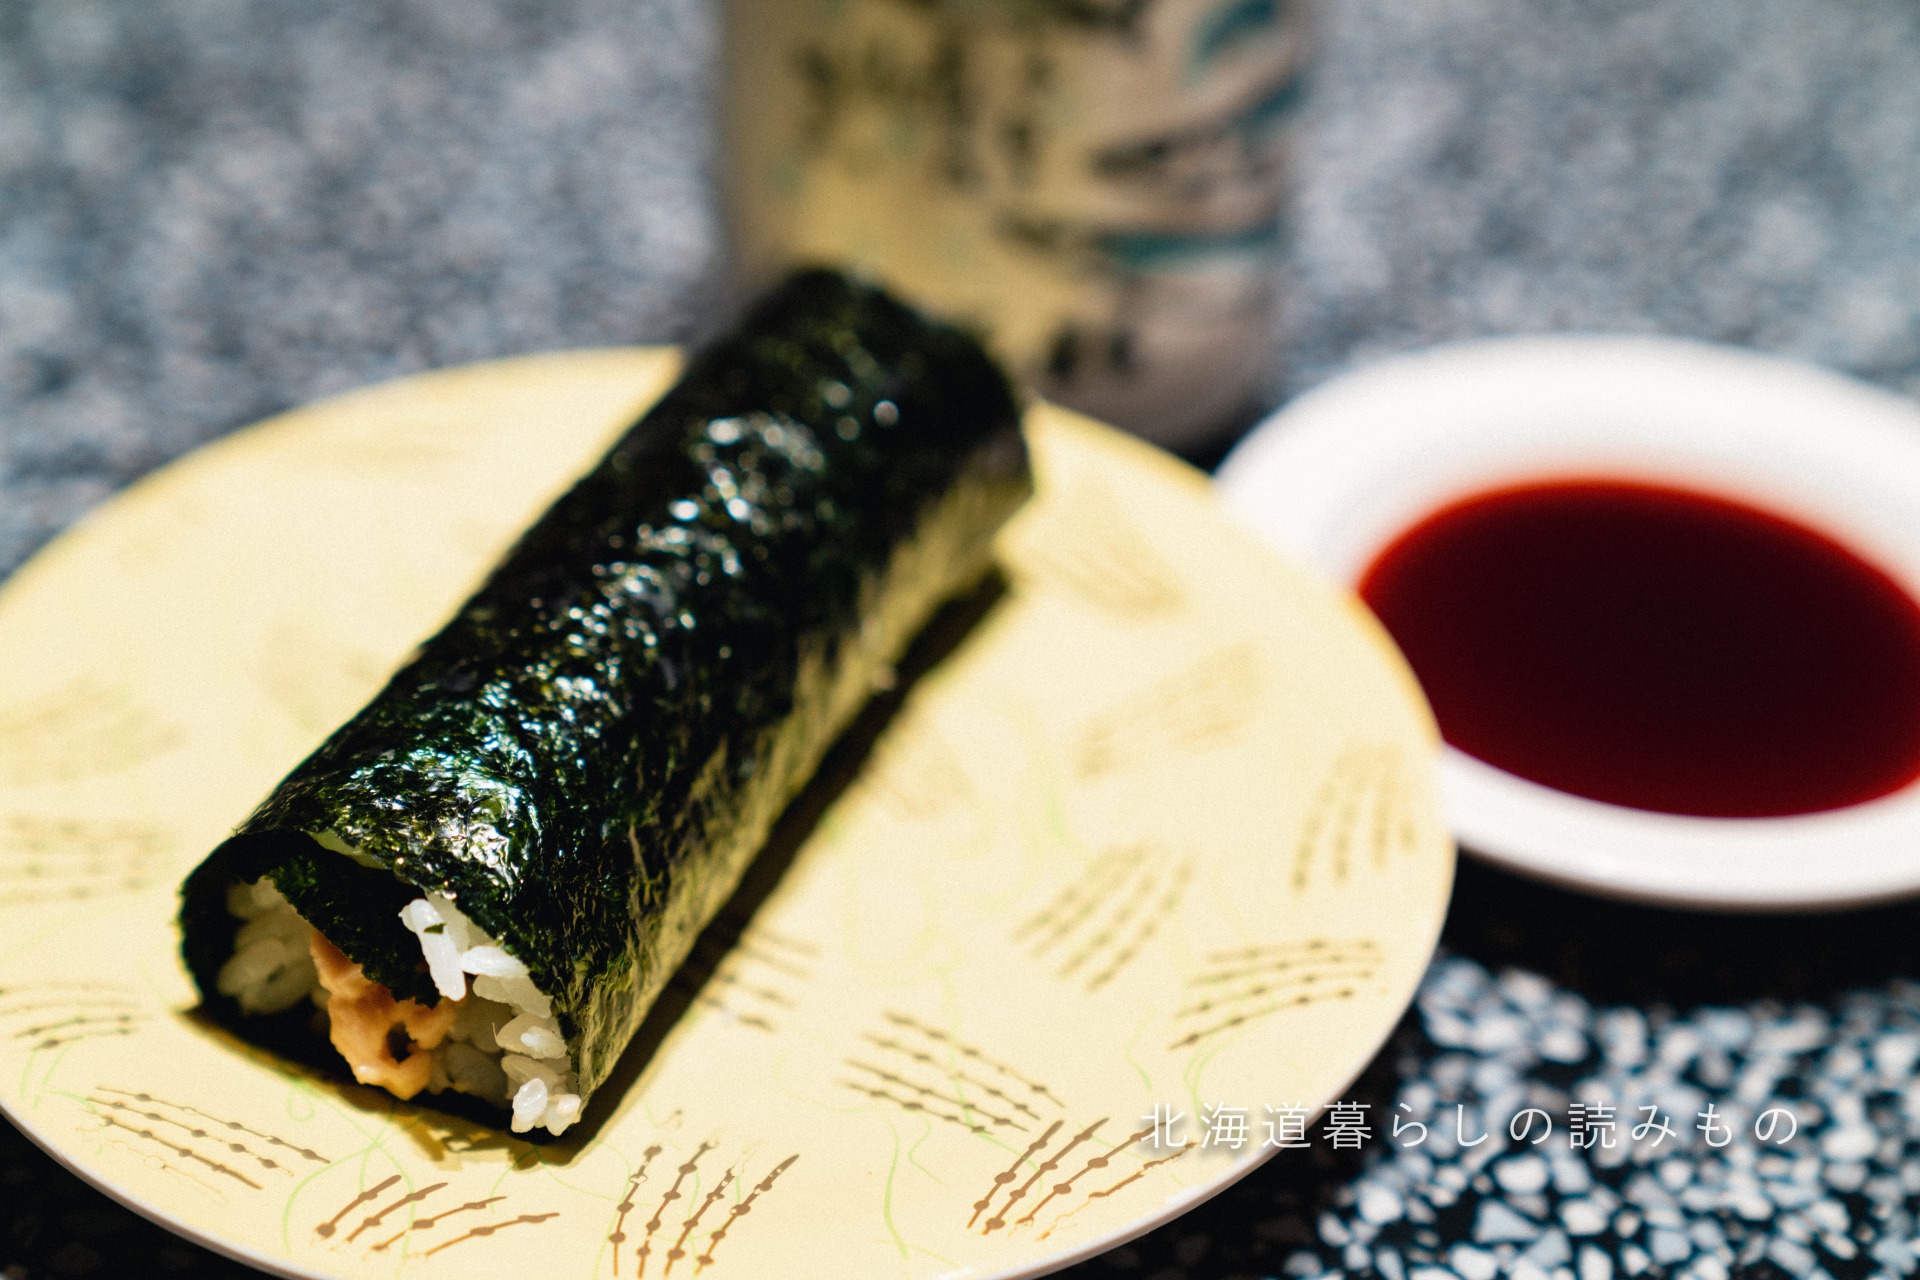 迴轉壽司根室花丸的菜單上的「野生綠芥末納豆巻壽司」